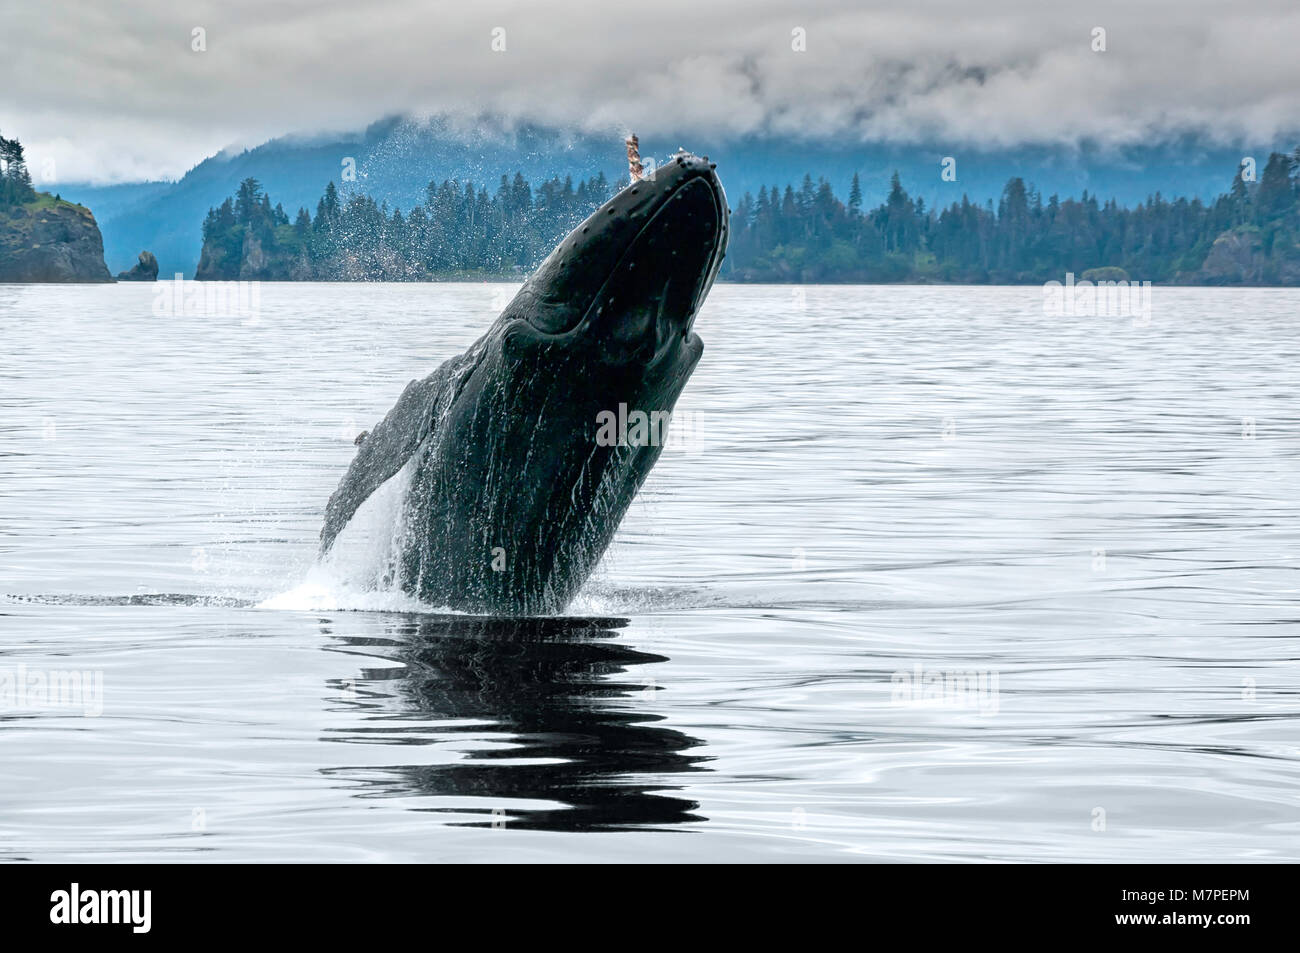 Un big whale breaching dans l'océan, près de l'ALASKA Seward avec de l'eau splash dans un jour nuageux gris de l'été Banque D'Images